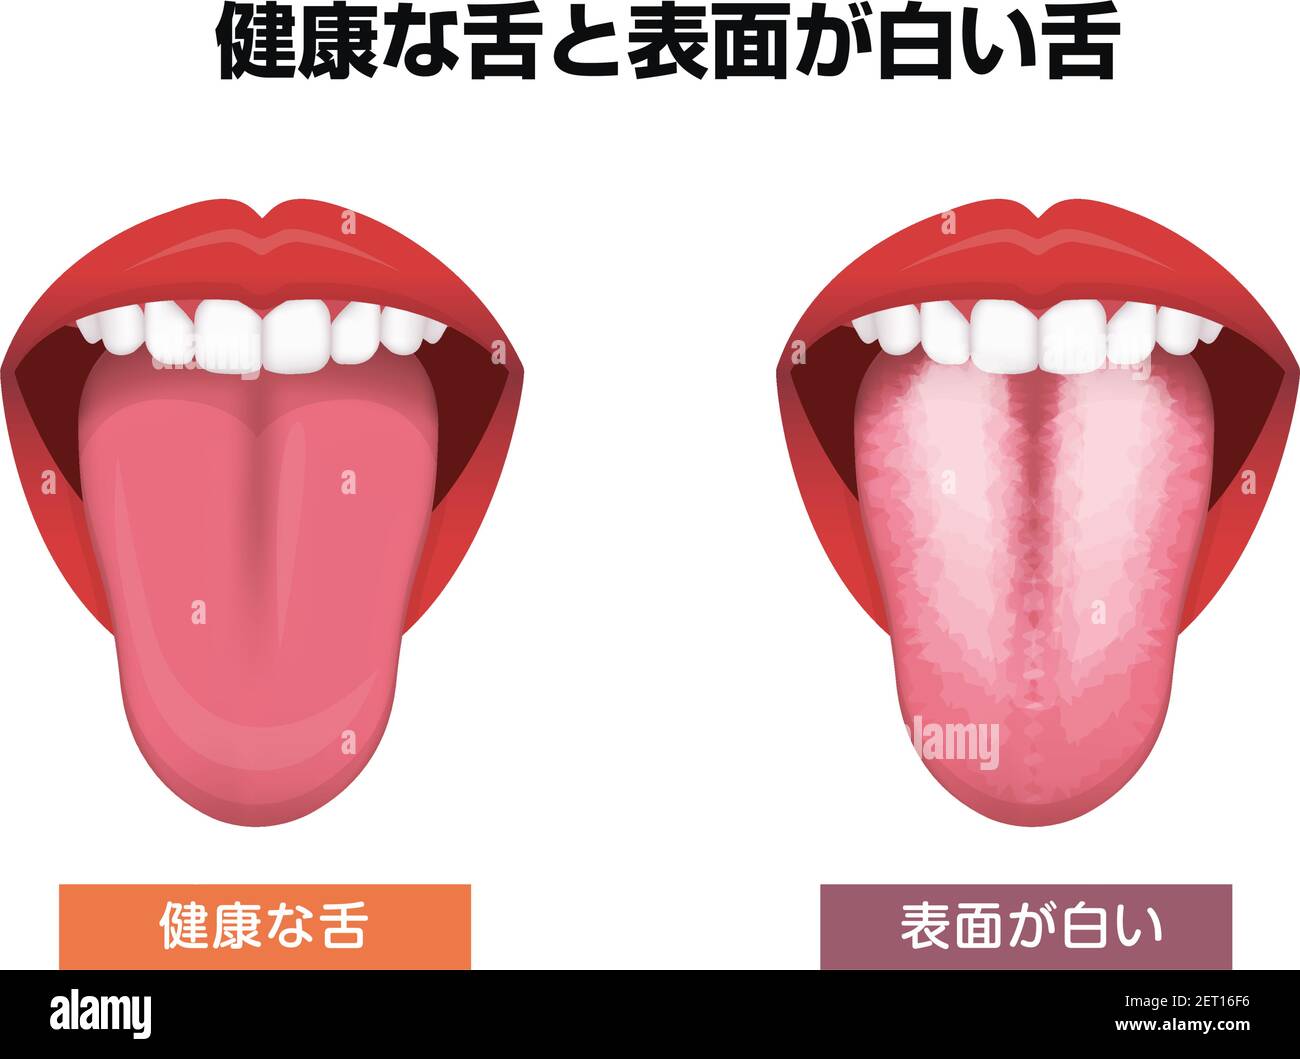 Zunge Gesundheit Zeichen Vektor-Illustration ( weiß beschichtete Zunge ) Stock Vektor